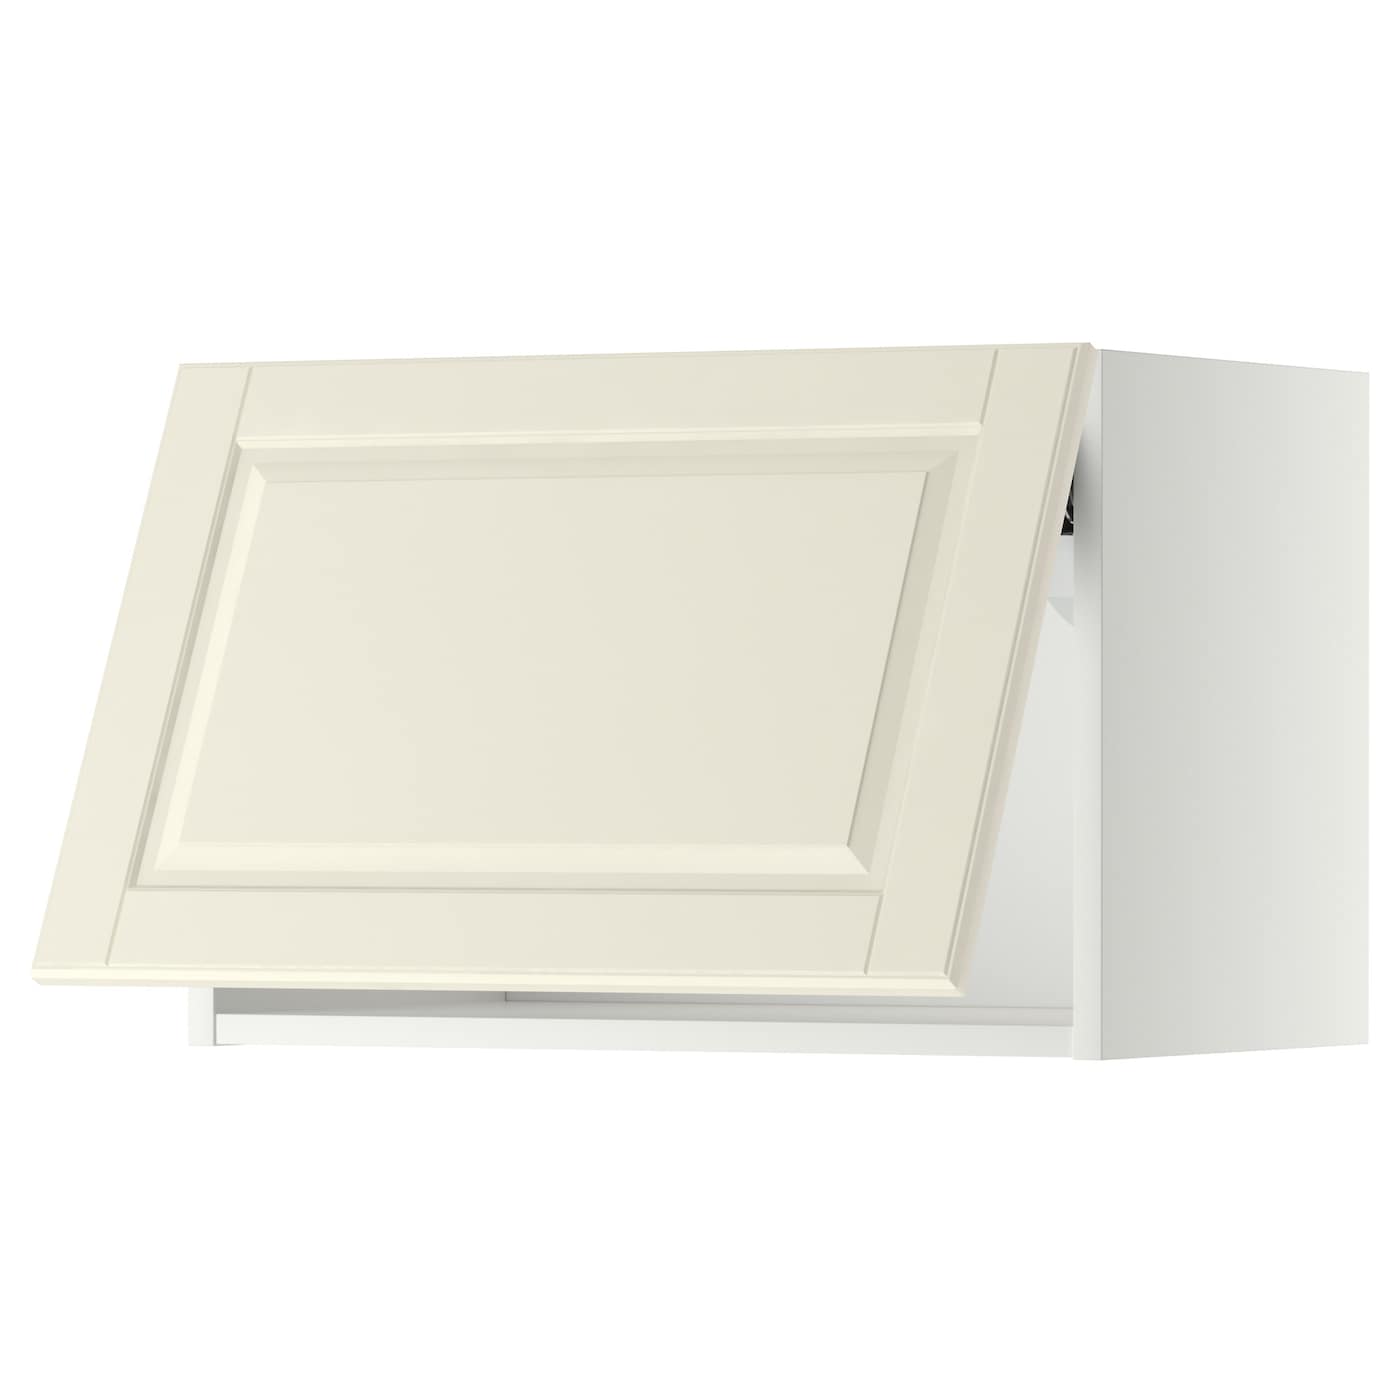 Навесной шкаф - METOD IKEA/ МЕТОД ИКЕА, 40х60 см, белый/кремовый